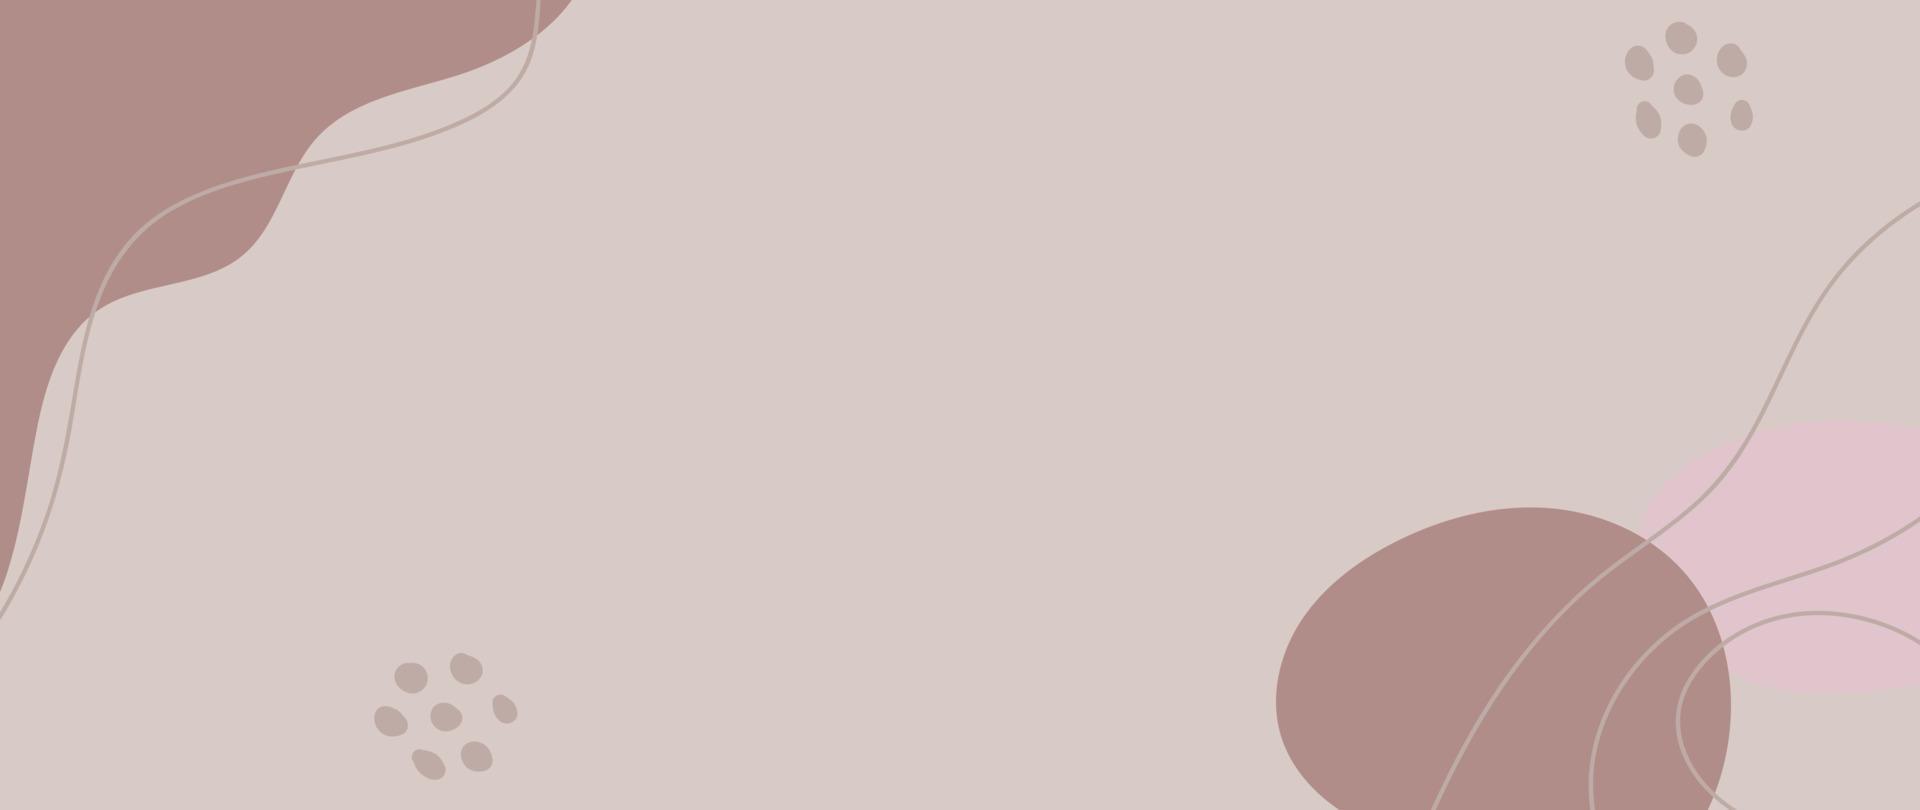 minimale abstrakte Hintergrundvektorillustration. weiche erdfarbene pastellfarbene organische form mit gepunktetem muster und kurvenlinienkunst. Design für Wandkunst, Druck, Poster, Wohnkultur, Cover, Tapete. vektor